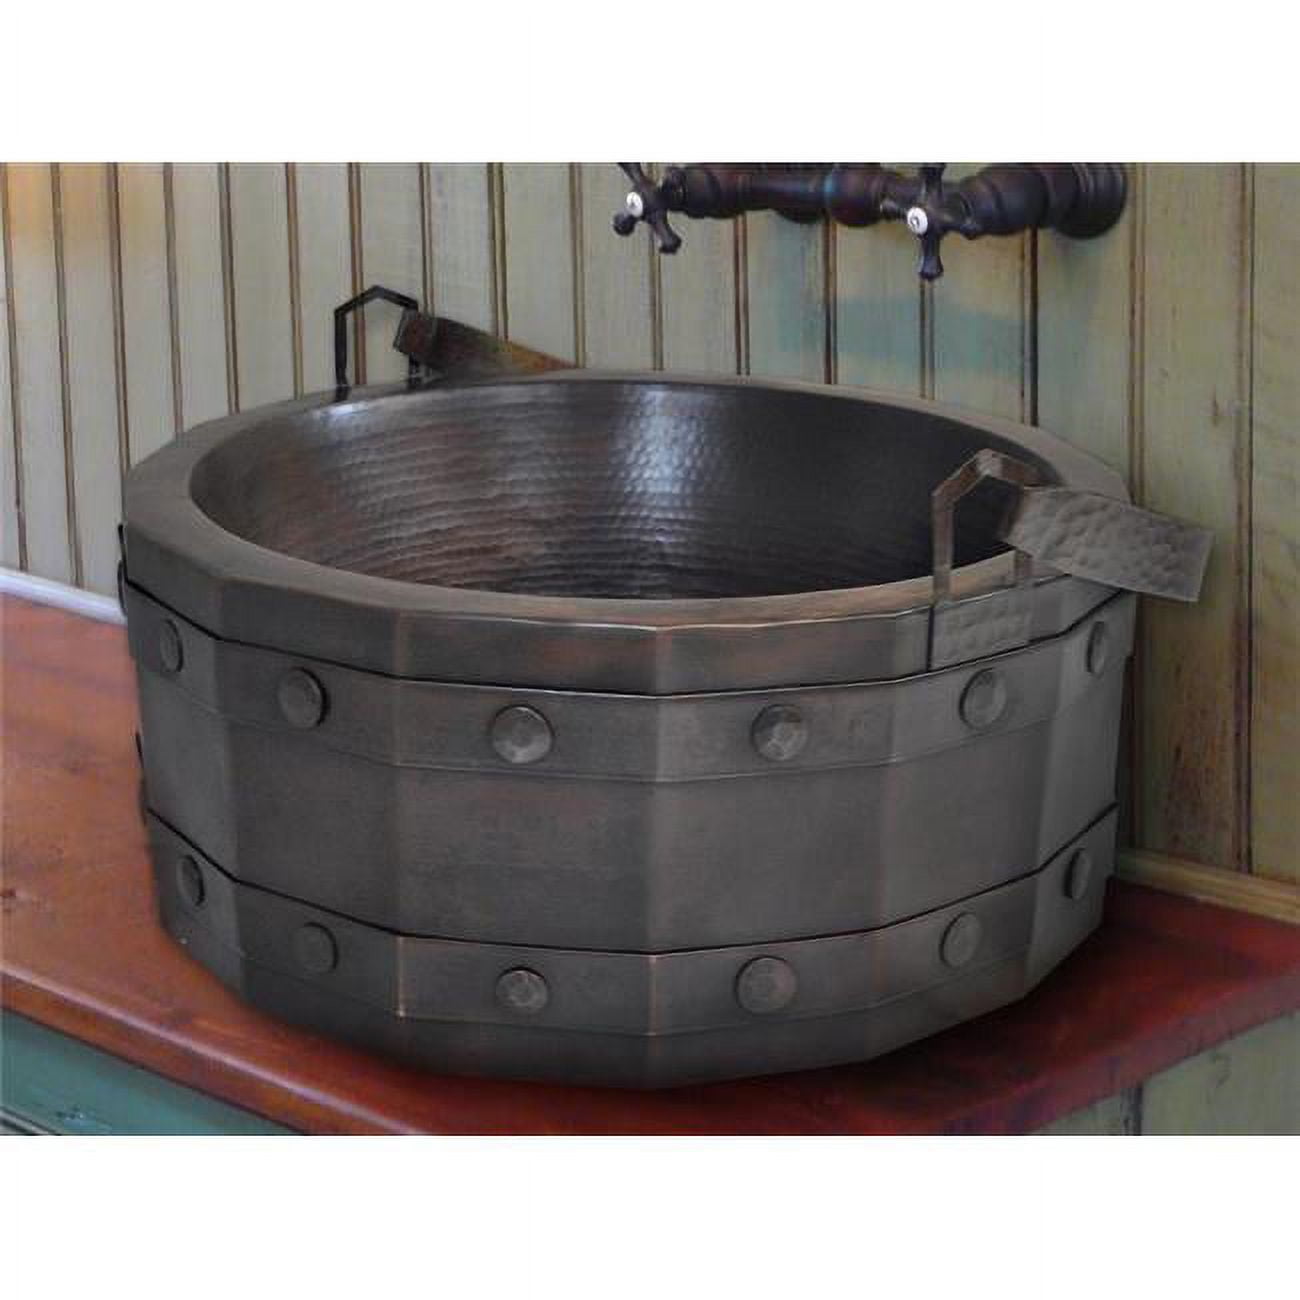 Crvs-bk-17-ma Copper Round Vessel Sink, Matte - Bucket Design - 7 X 17 X 17 In.